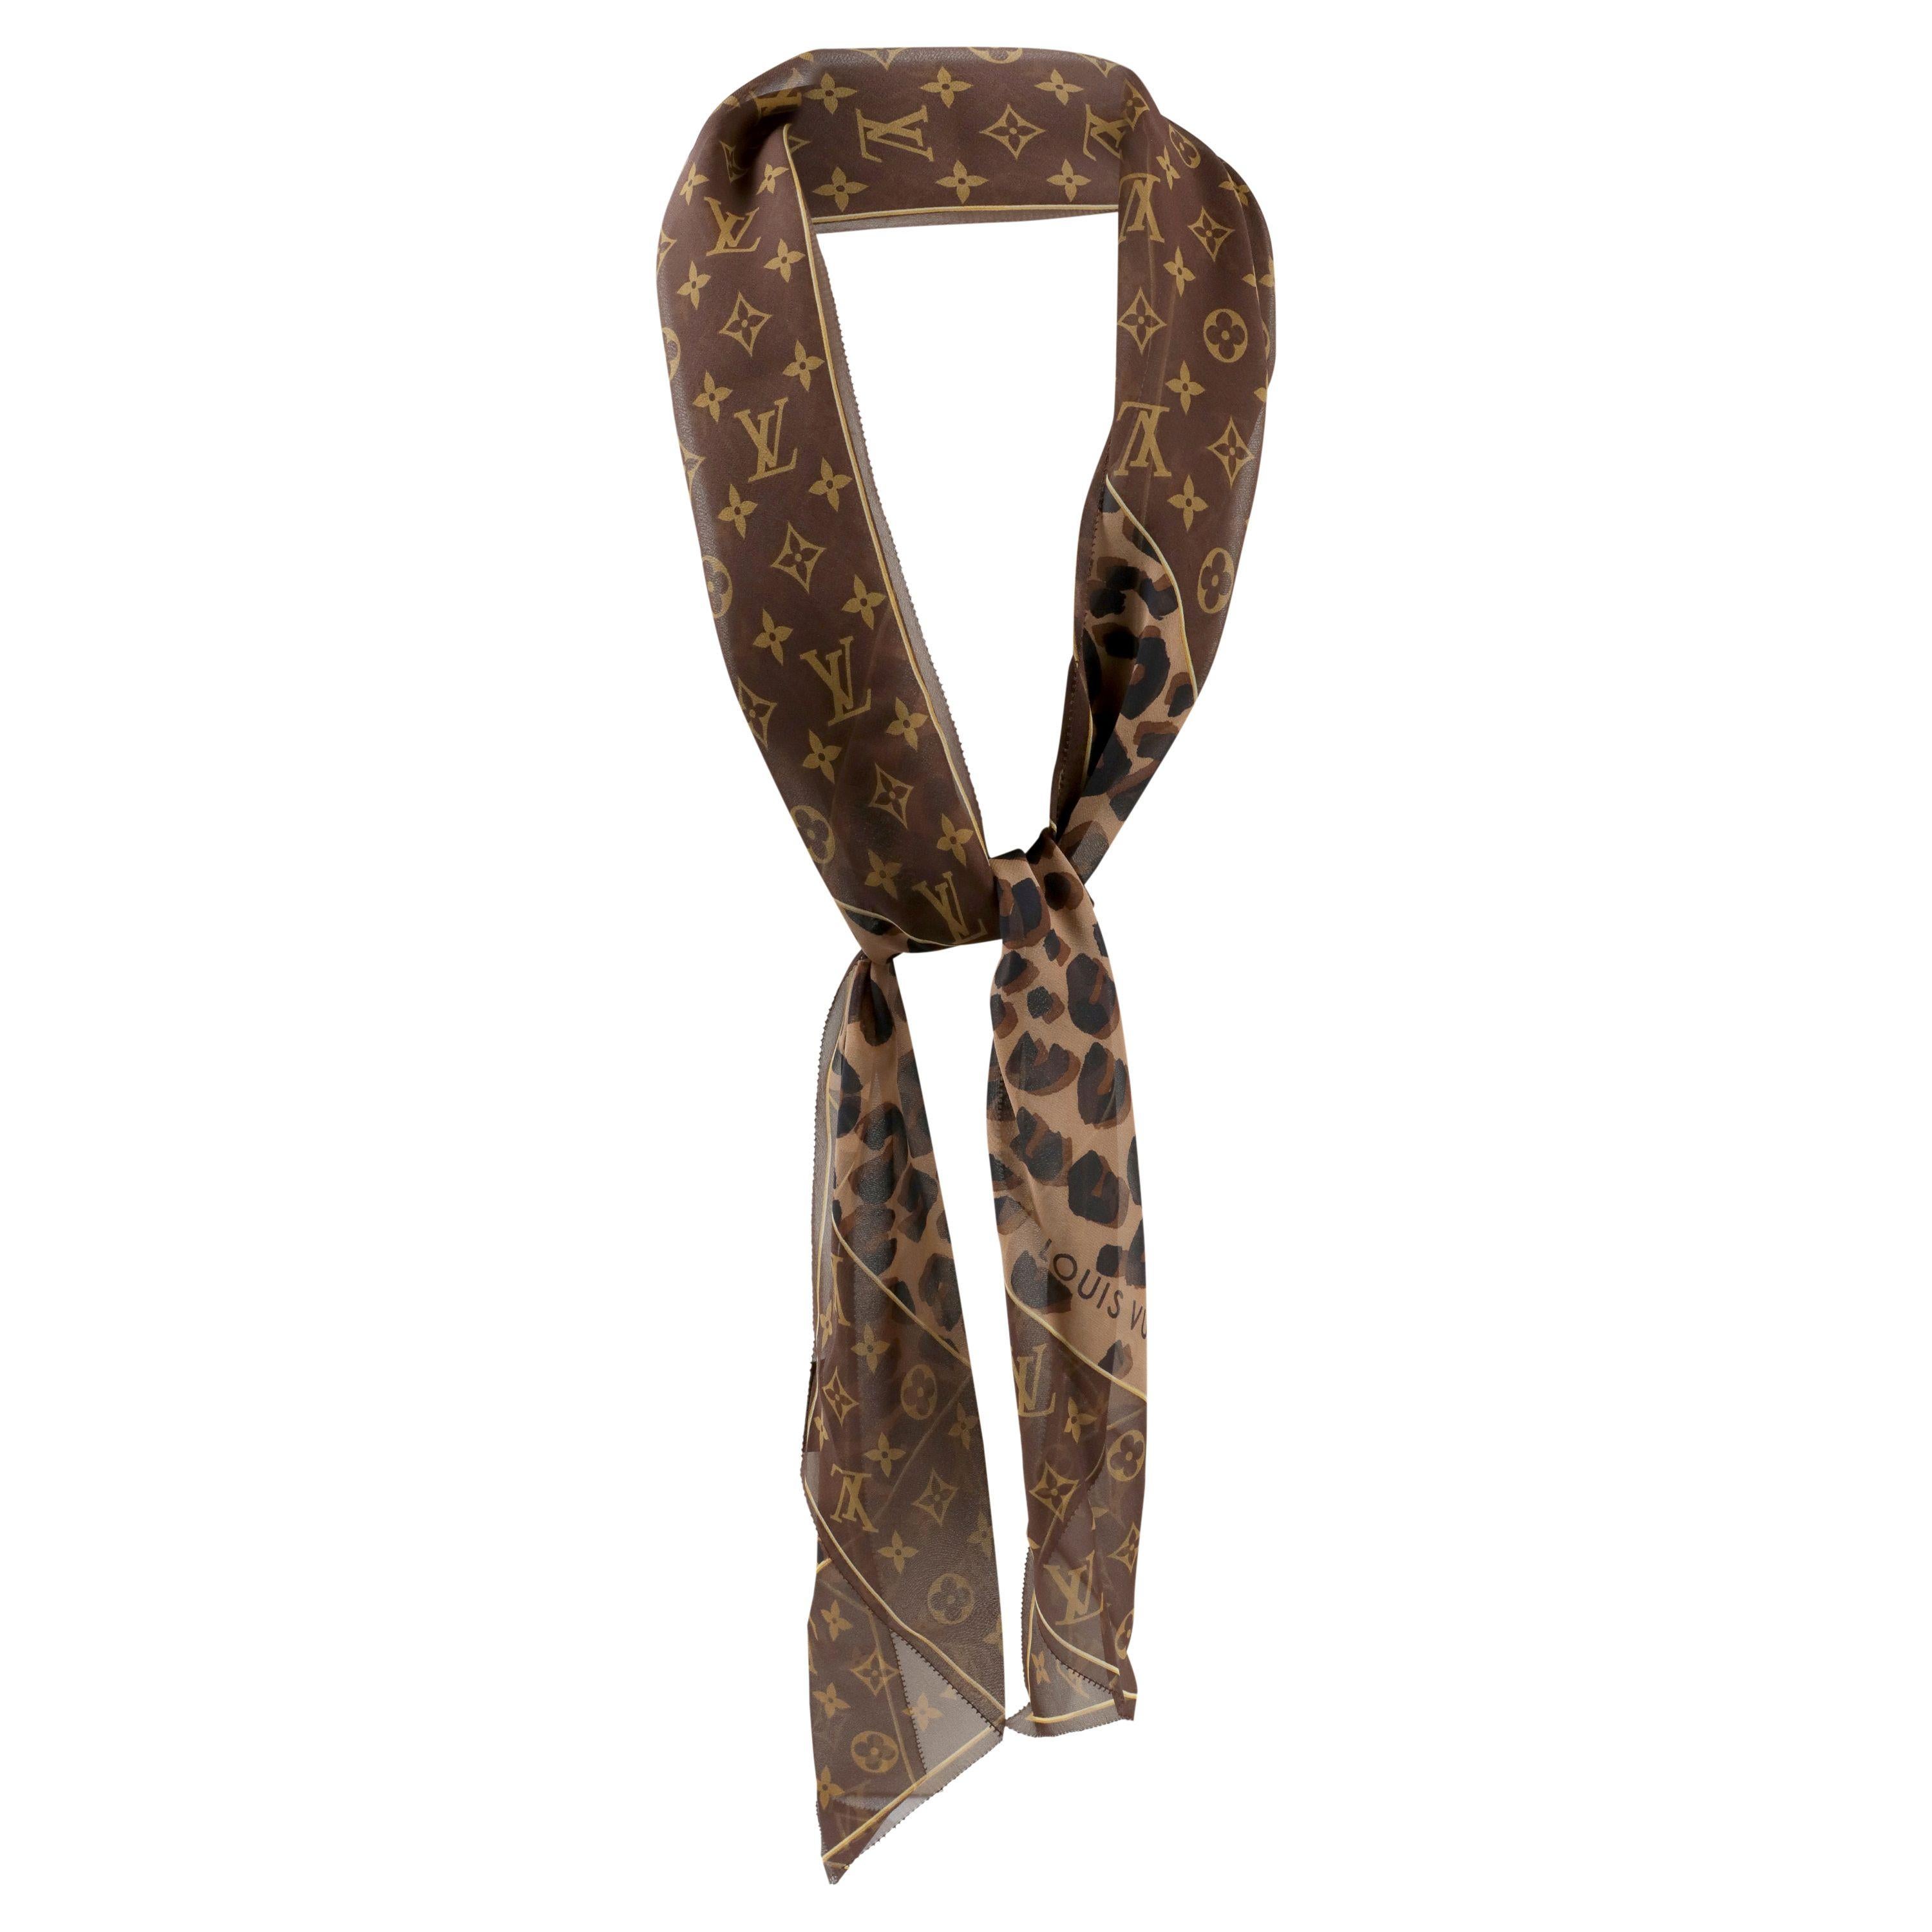 Dies ist authentisch. Louis Vuitton Chiffon Cheetah Skinny Schal ist makellos.  Das charakteristische LV-Monogramm in Braun und Hellbraun ist mit einem koordinierten Tierprint versehen.  Hergestellt in Italien.  
PBF 13927
